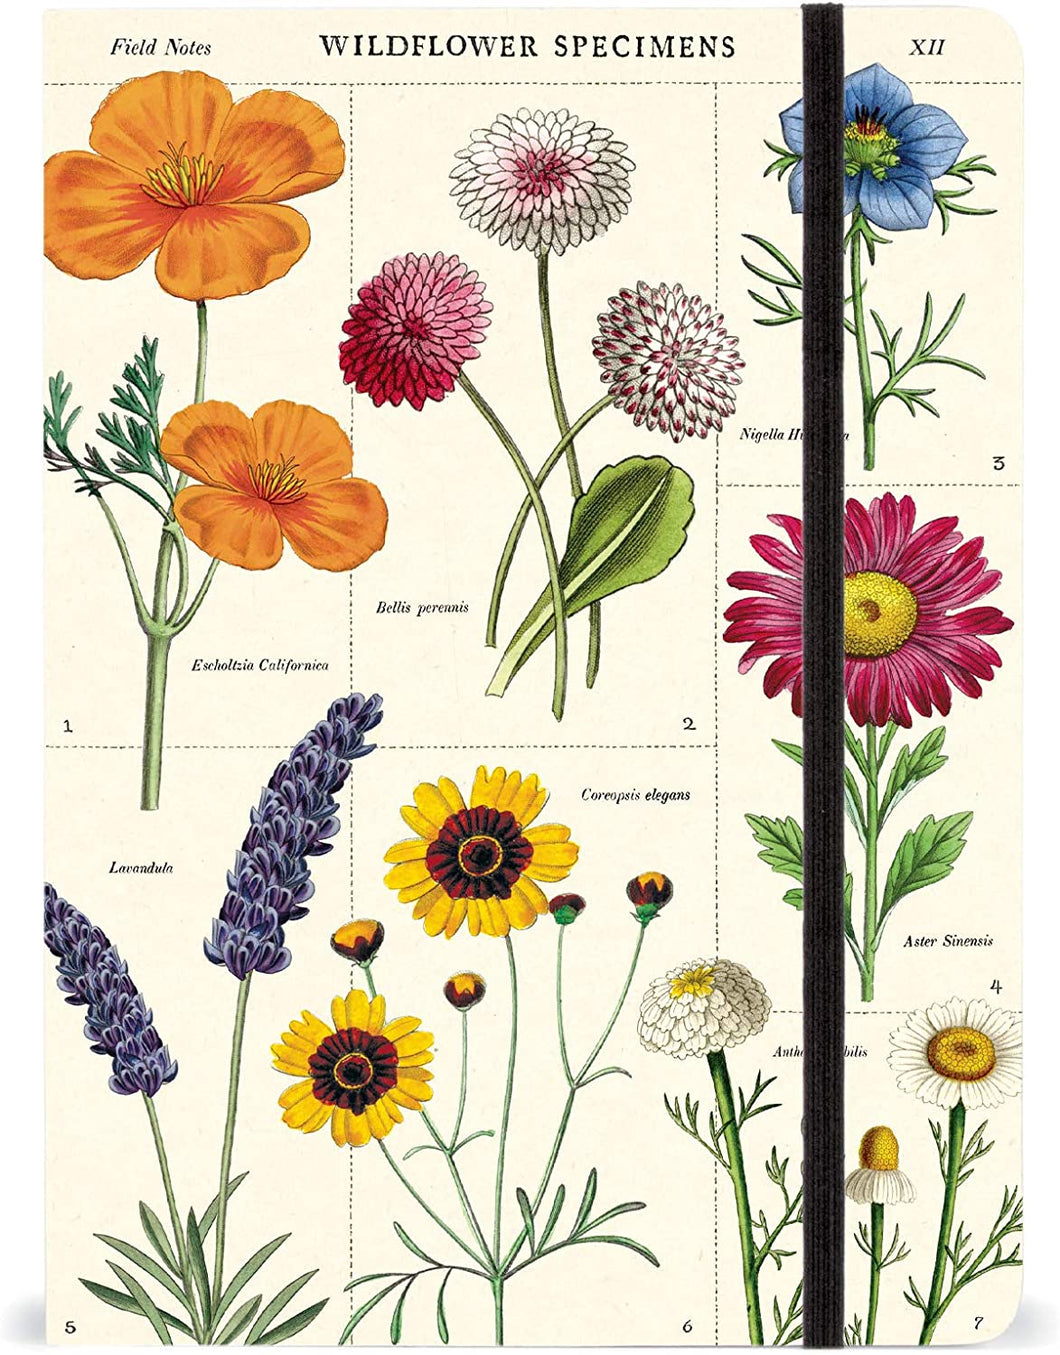 Cuaderno / Notebook Vintage wildflowers